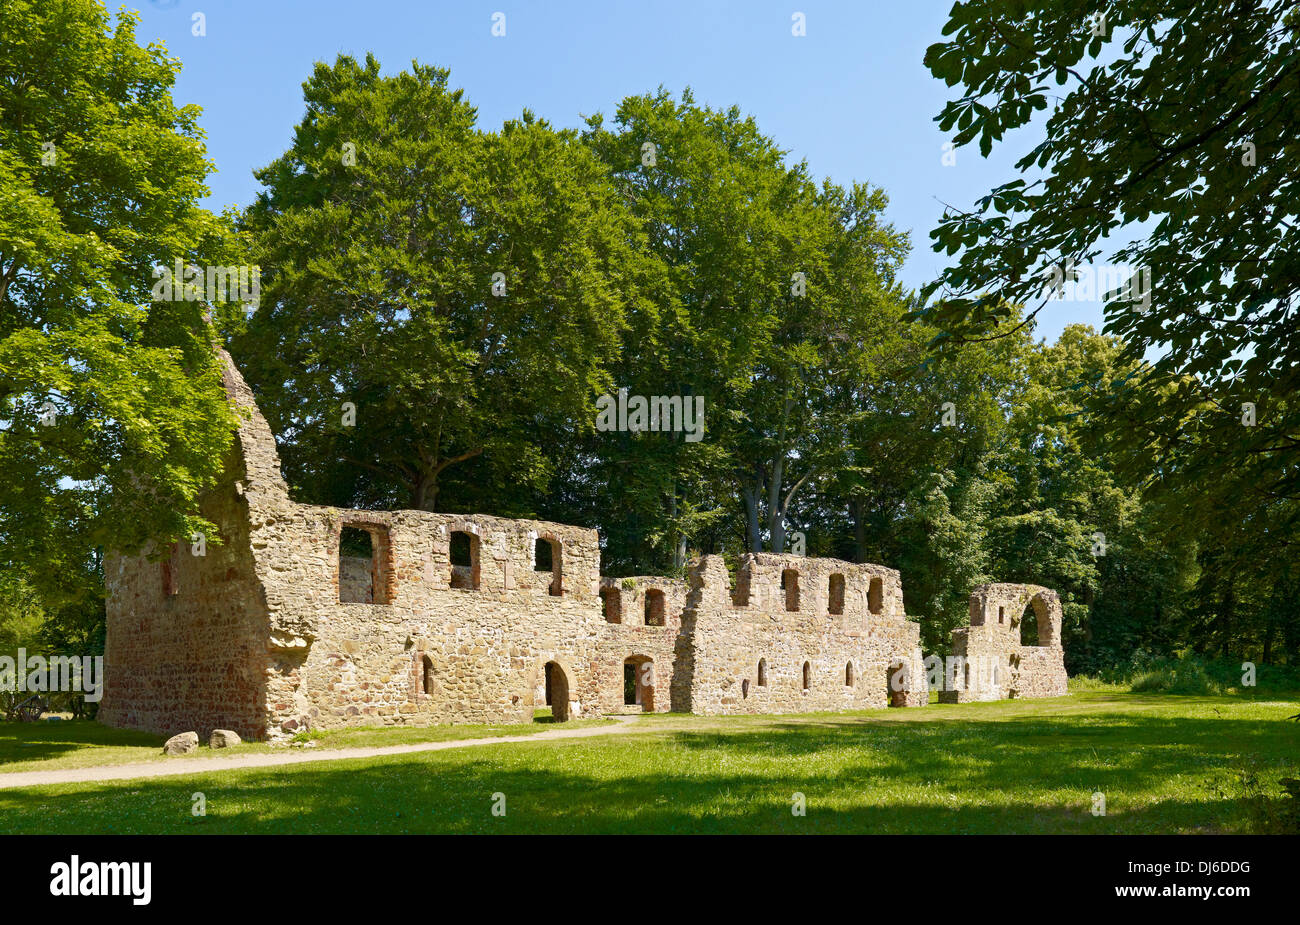 Ruined Abbey Nimbschen, Saxony, Germany Stock Photo